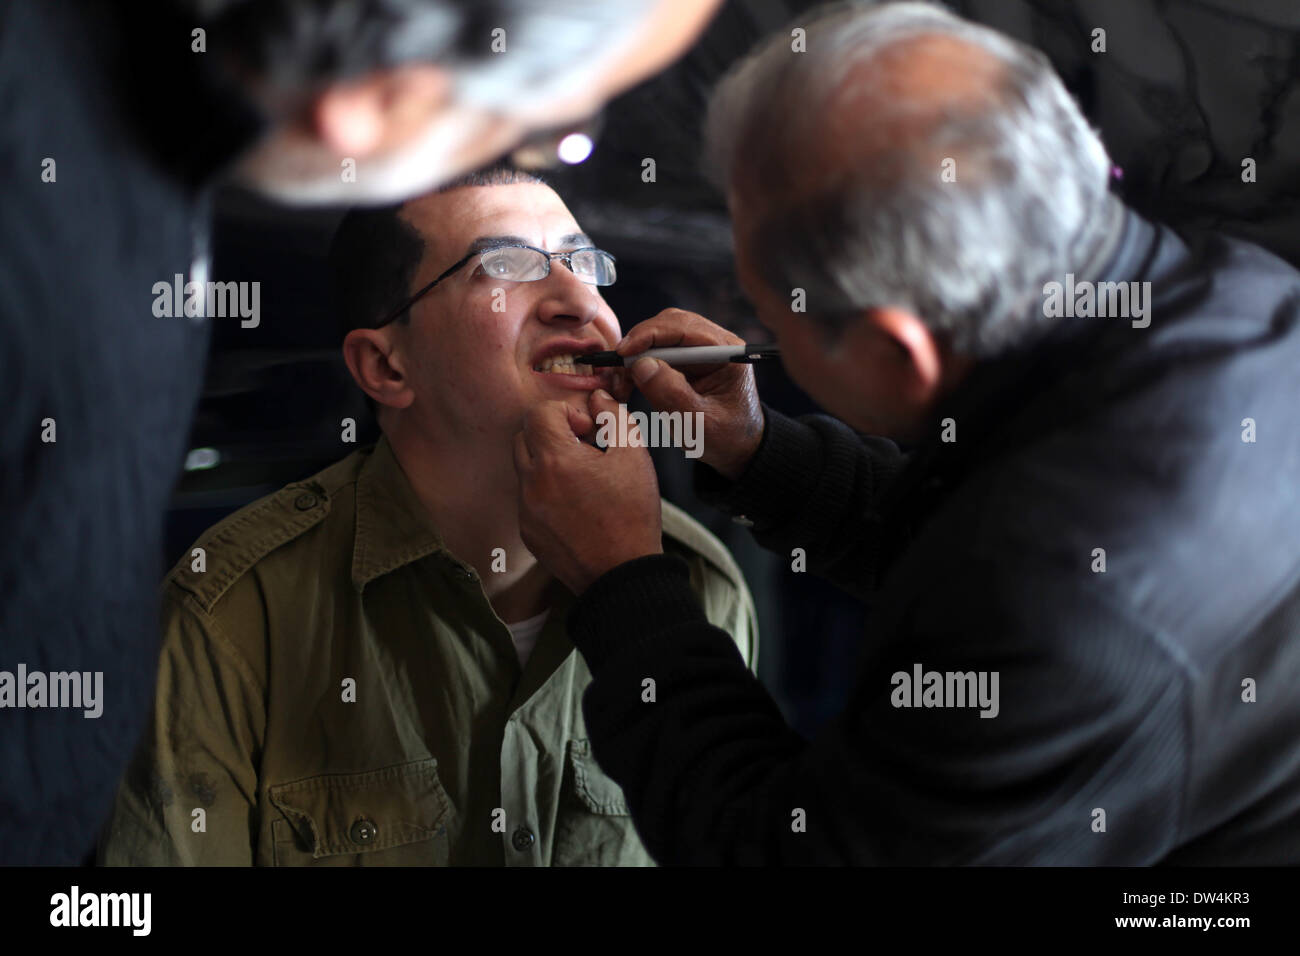 Gaza, Palästinensische Gebiete. 27. Februar 2014. Schauspieler Mahmoud Karira, der Gilad Schalit spielt, hat Make-up angewendet von einem Assistenten während der Dreharbeiten eines Films im Gaza-Streifen namens "Verlieren Shalit" gemacht. "Schalit verliert", derzeit in dem abgeriegelten Gebiet gefilmt wird, ist der erste einer geplanten dreiteiligen Serie über die 2006 Aufnahme des israelischen Soldaten Gilad Schalit von bewaffneten verbündete sich mit den islamischen Militanten Hamas-Bewegung. Teile zwei und drei werden Schalits Zeit in Gefangenschaft und seine 2011 Swap für Hunderte von palästinensischen Häftlinge durch Israel darzustellen. (Kredit-Bild: © Majdi Fathi/NurPhoto/ZUM Stockfoto